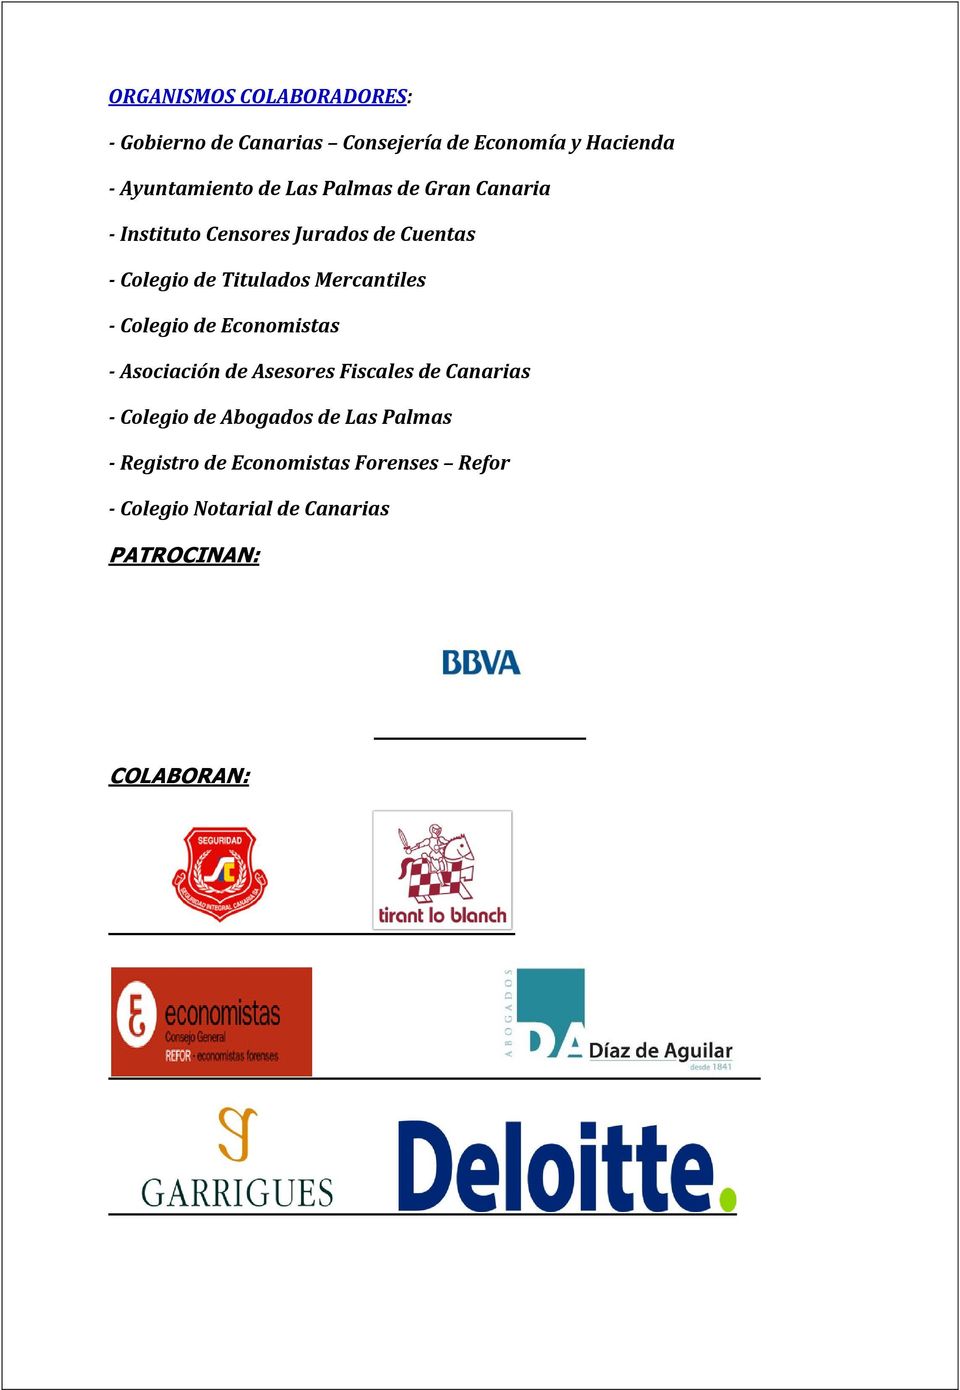 Mercantiles - Colegio de Economistas - Asociación de Asesores Fiscales de Canarias - Colegio de